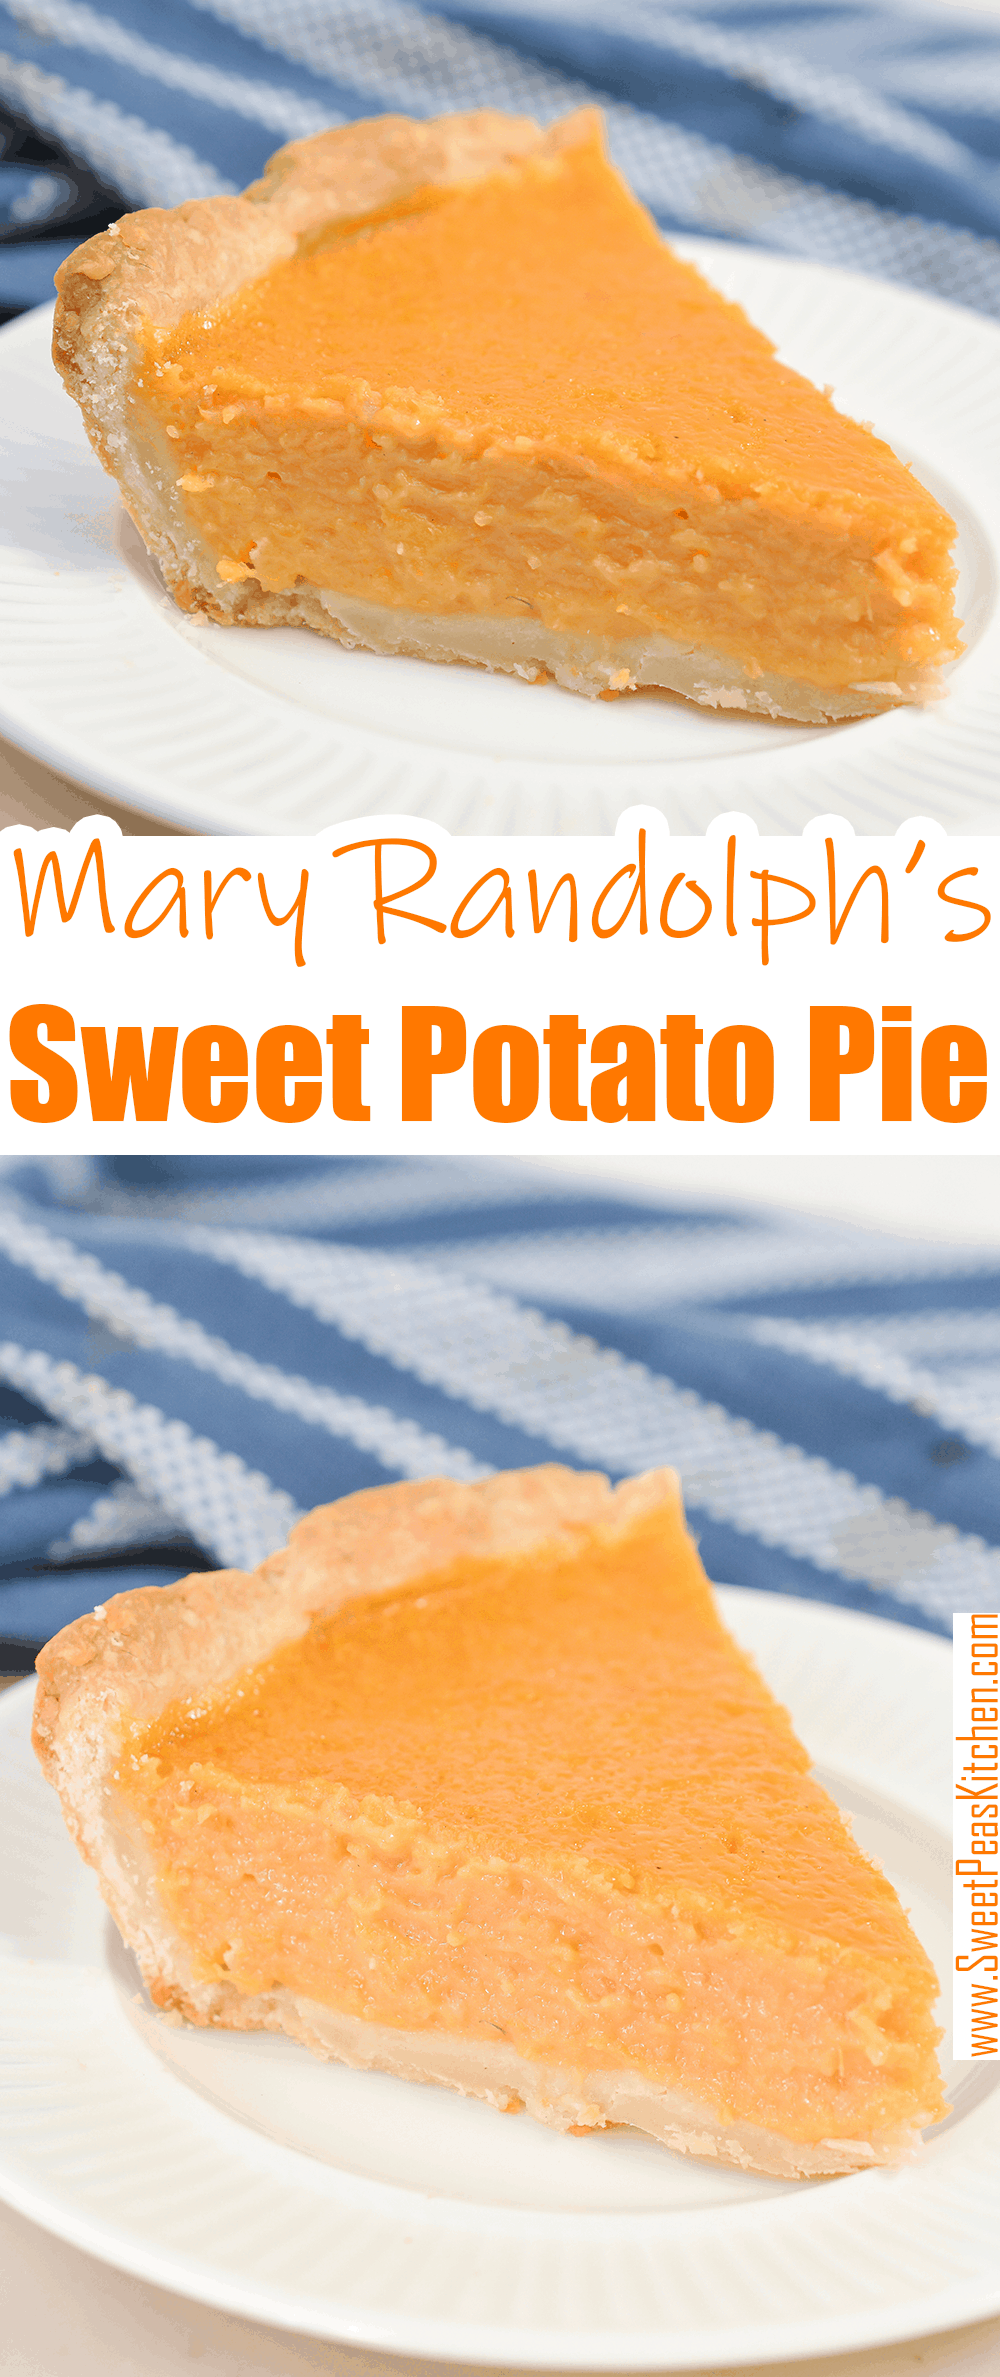 Mary Randolph's Sweet Potato Pie